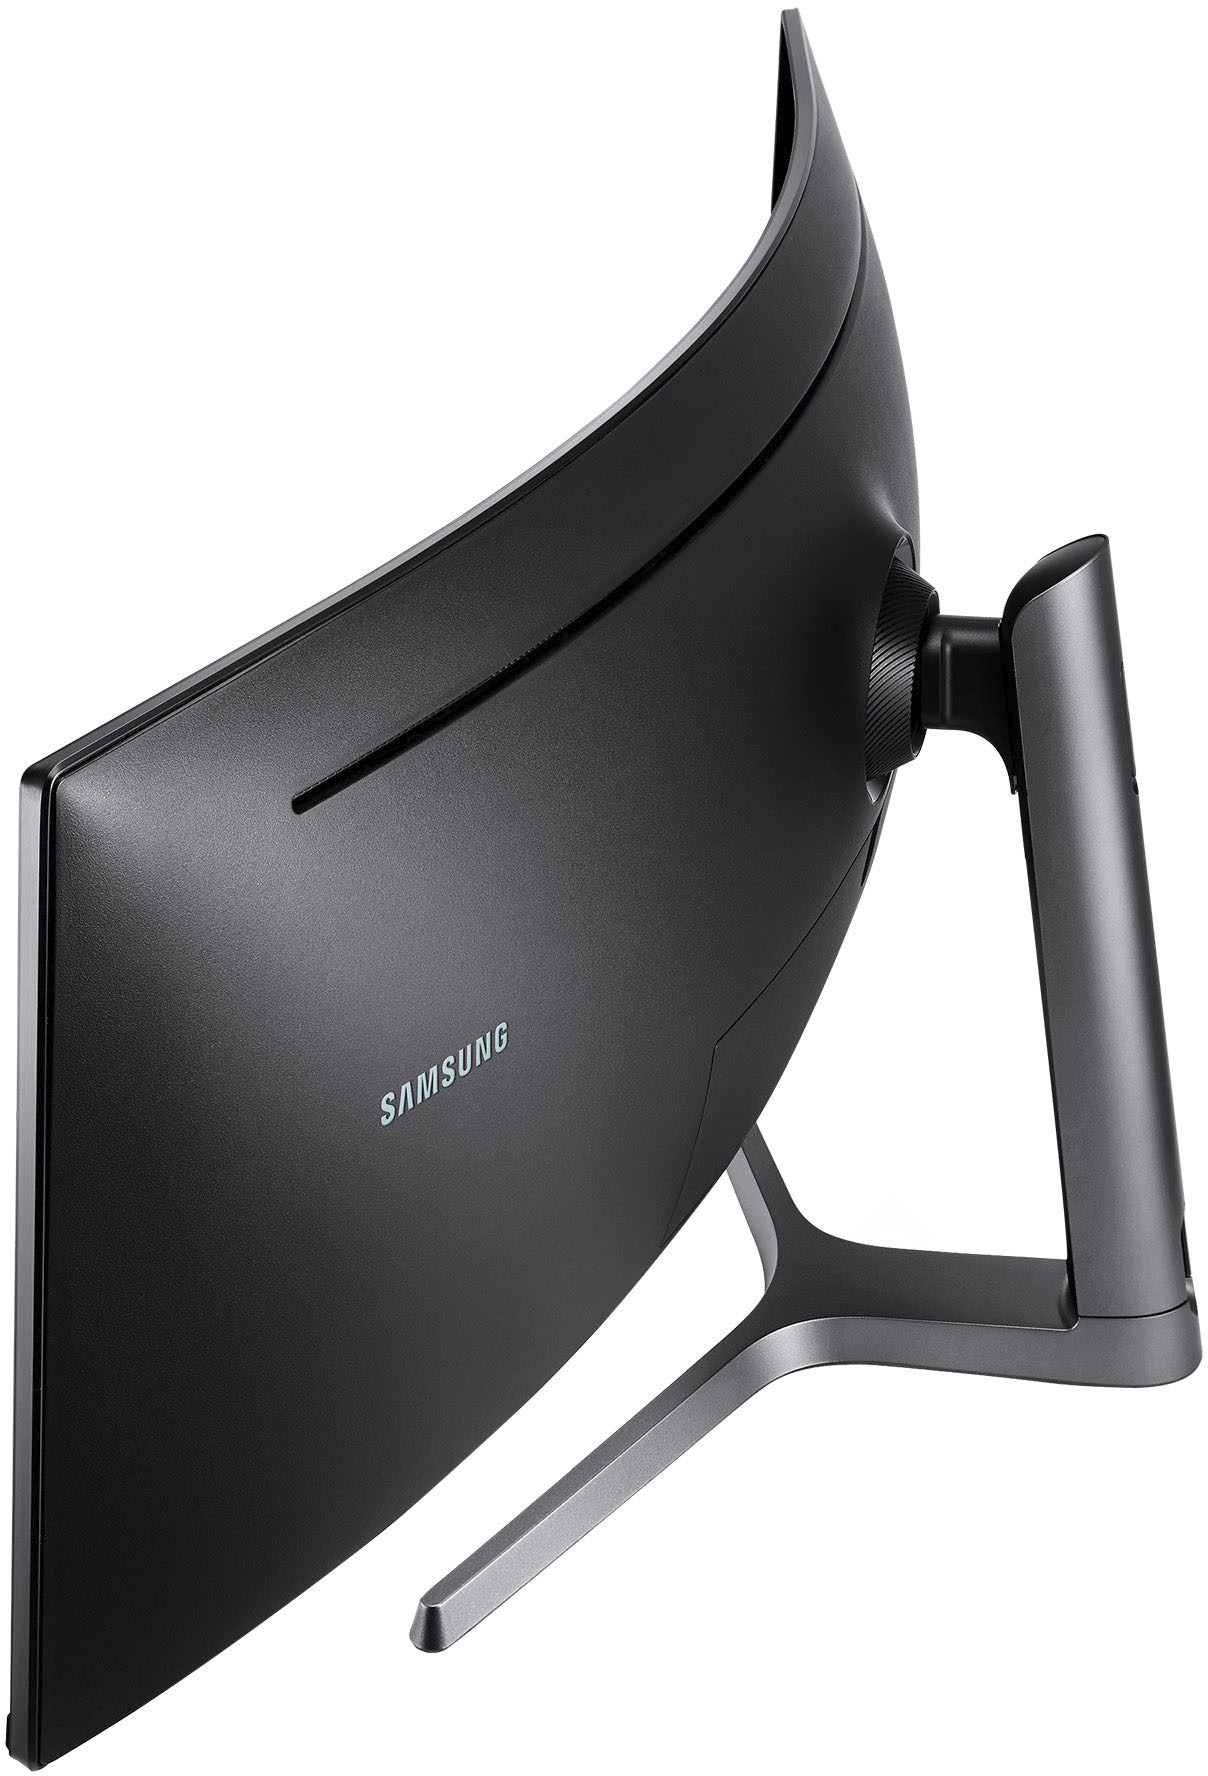 Samsung C49HG90, anÃ¡lisis a fondo con caracterÃsticas y precio